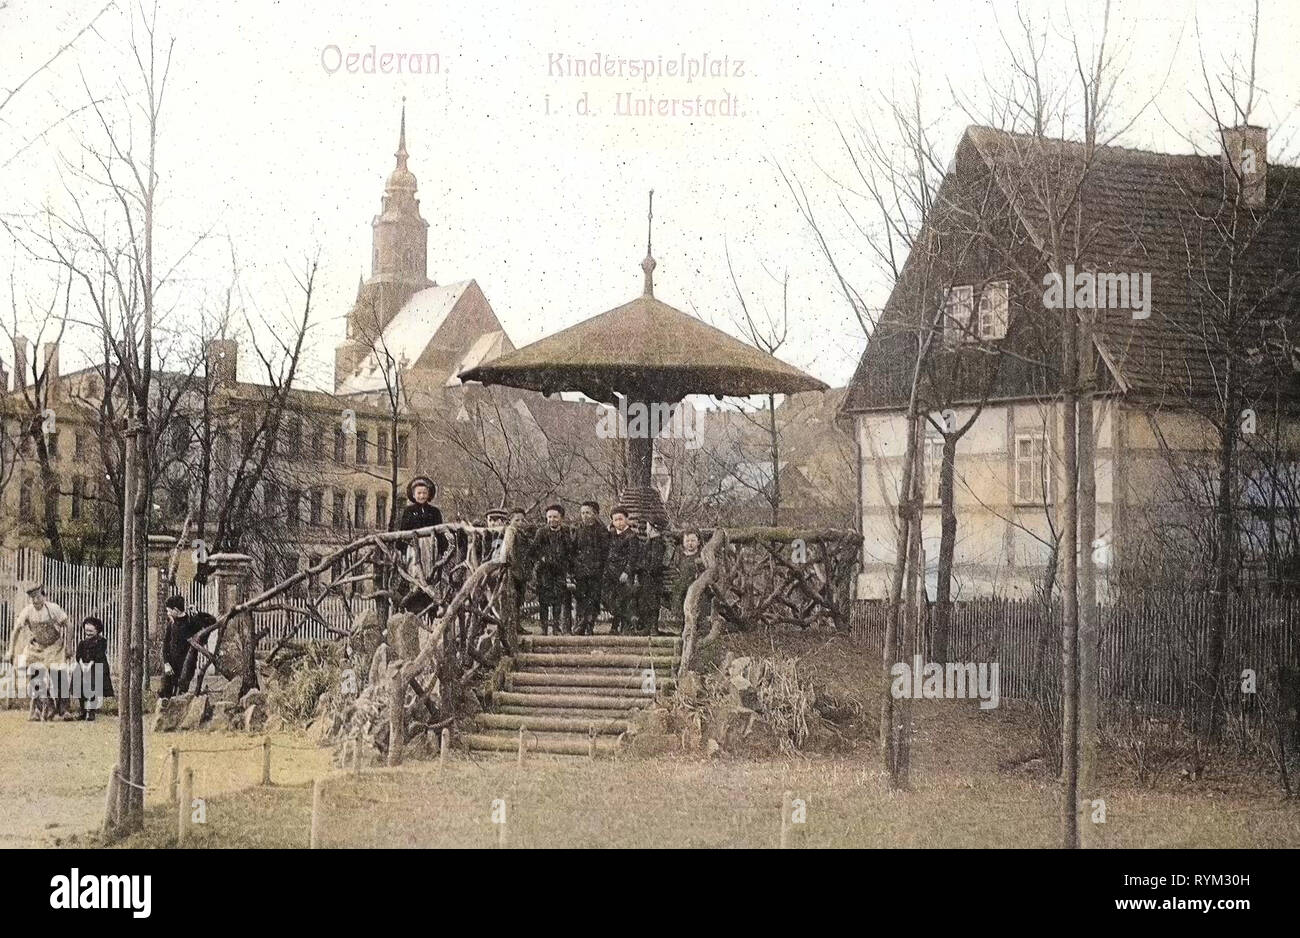 Spielplätze in Sachsen, Kirchen in Oederan, Gebäude in Oederan, 1906, Landkreis Mittelsachsen, Oederan, Kinderspielplatz, Deutschland Stockfoto